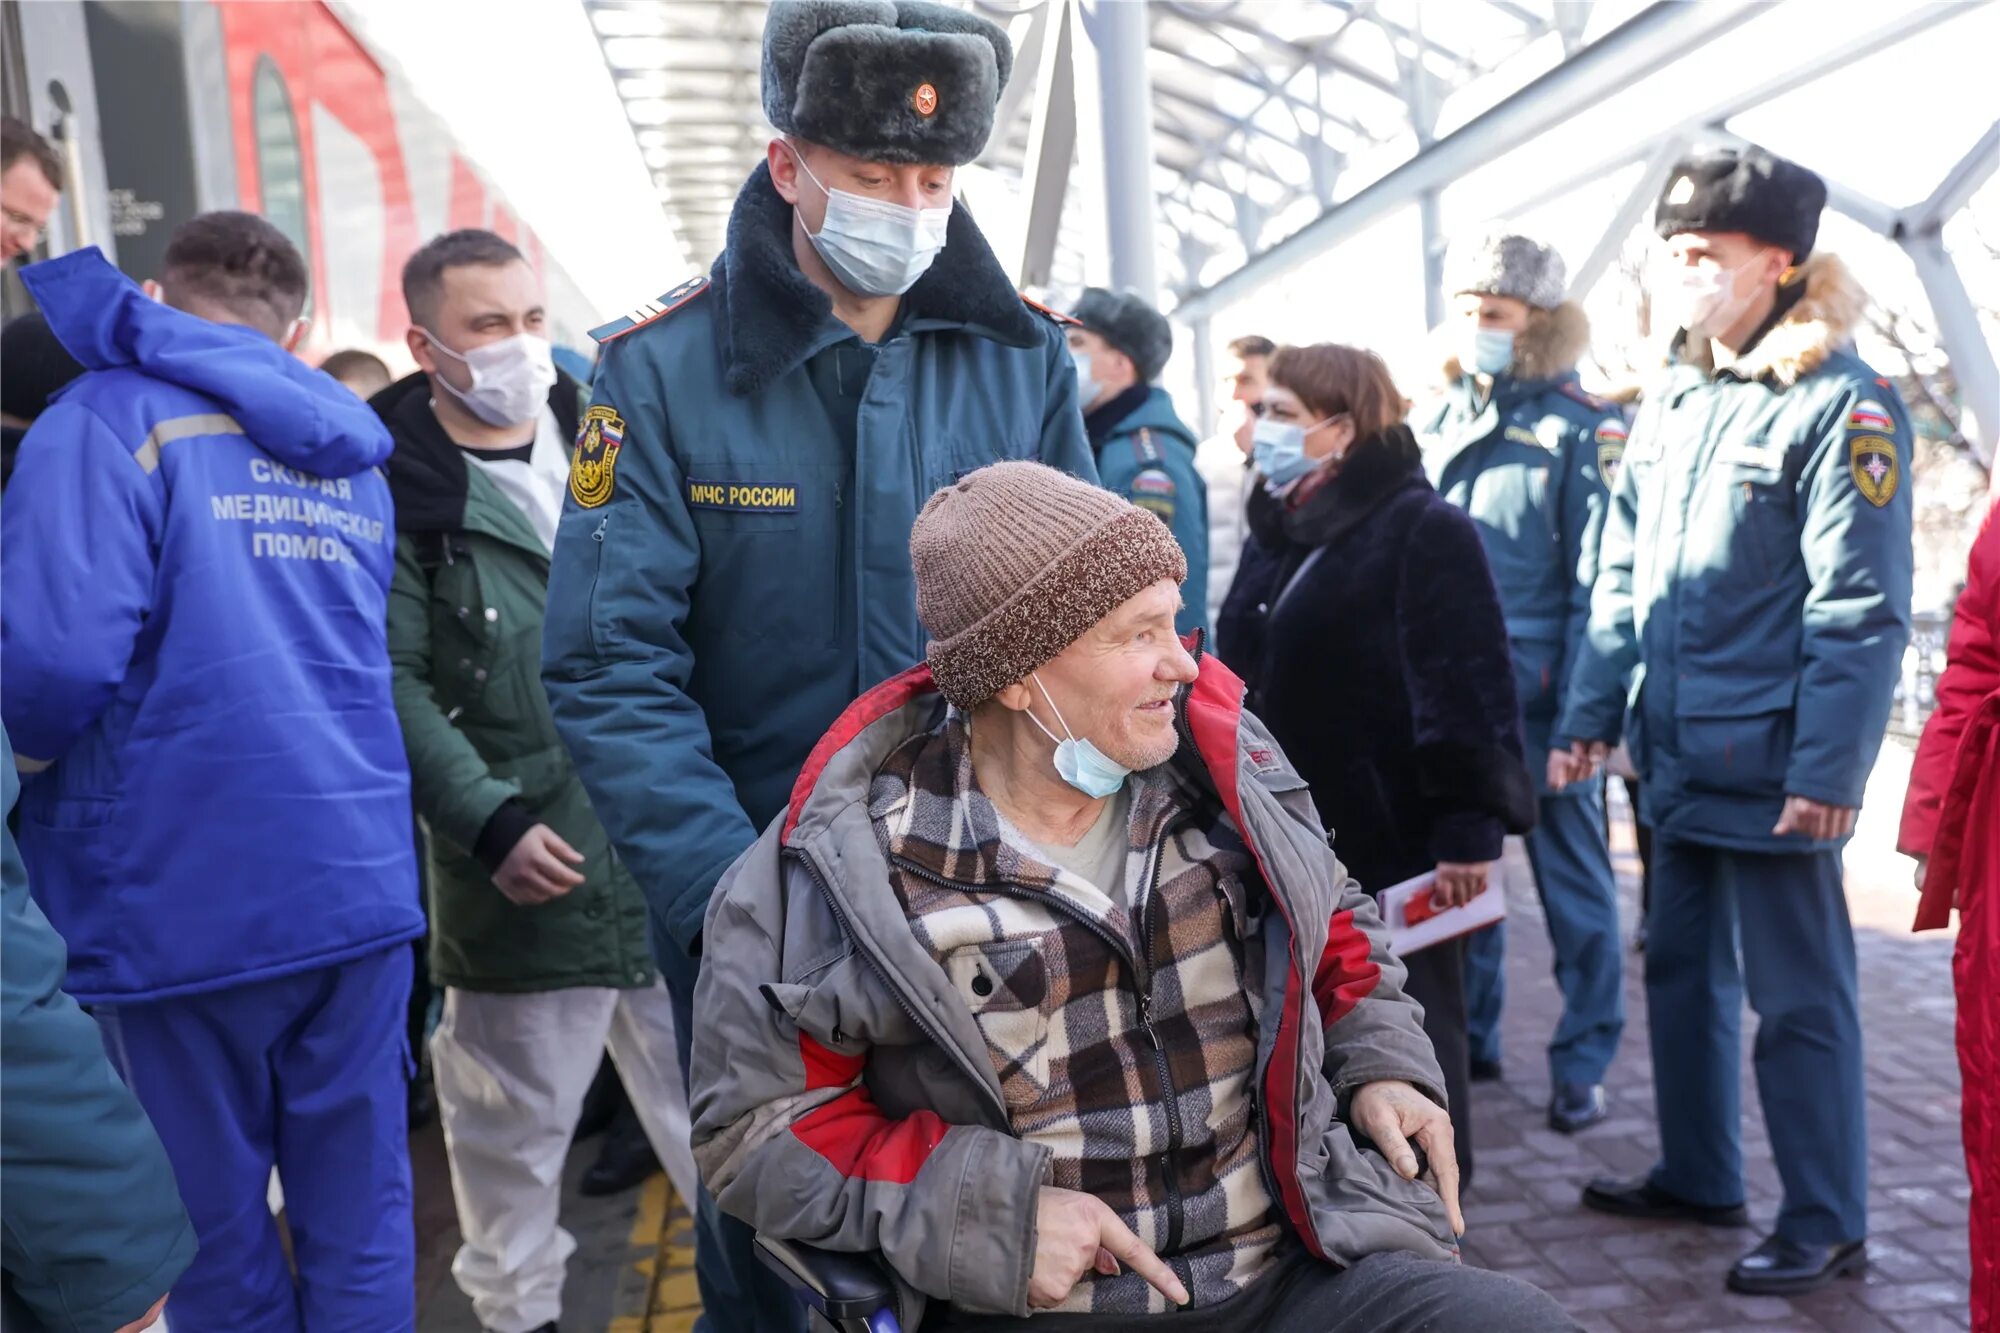 Эвакуация людей. Беженцы в Чебоксарах. Люди на вокзале. Встреча беженцев из Донбасса в Чебоксарах. Читать новости сегодня самые свежие и последние